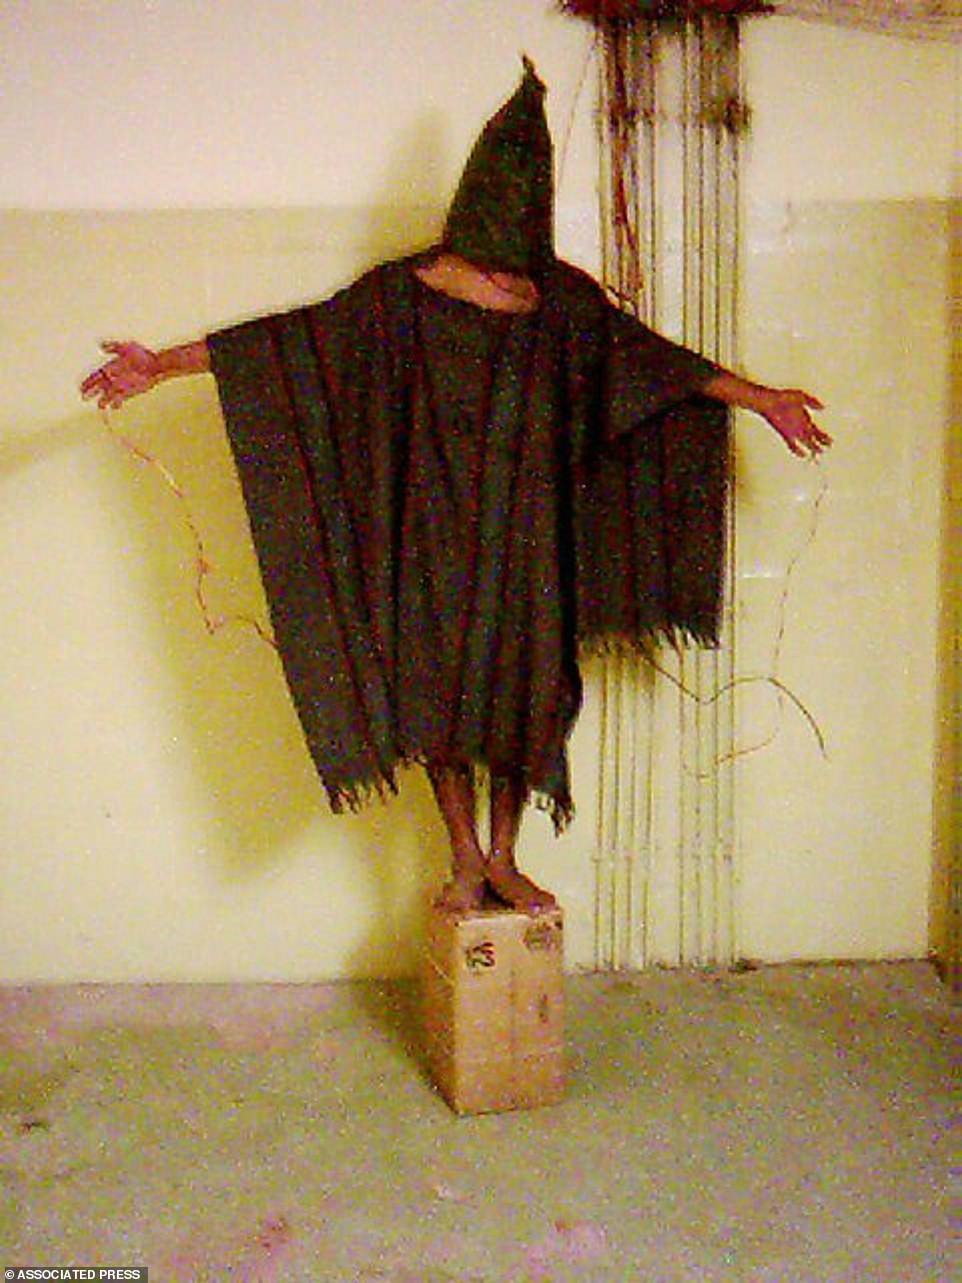 Một tù nhân không rõ danh tính đứng trên một chiếc hộp với một chiếc túi trên đầu và dây điện quanh người vào cuối năm 2003 tại nhà tù Abu Ghraib ở Baghdad, Iraq. Bức ảnh của AP nhận được 14% phiếu bầu.